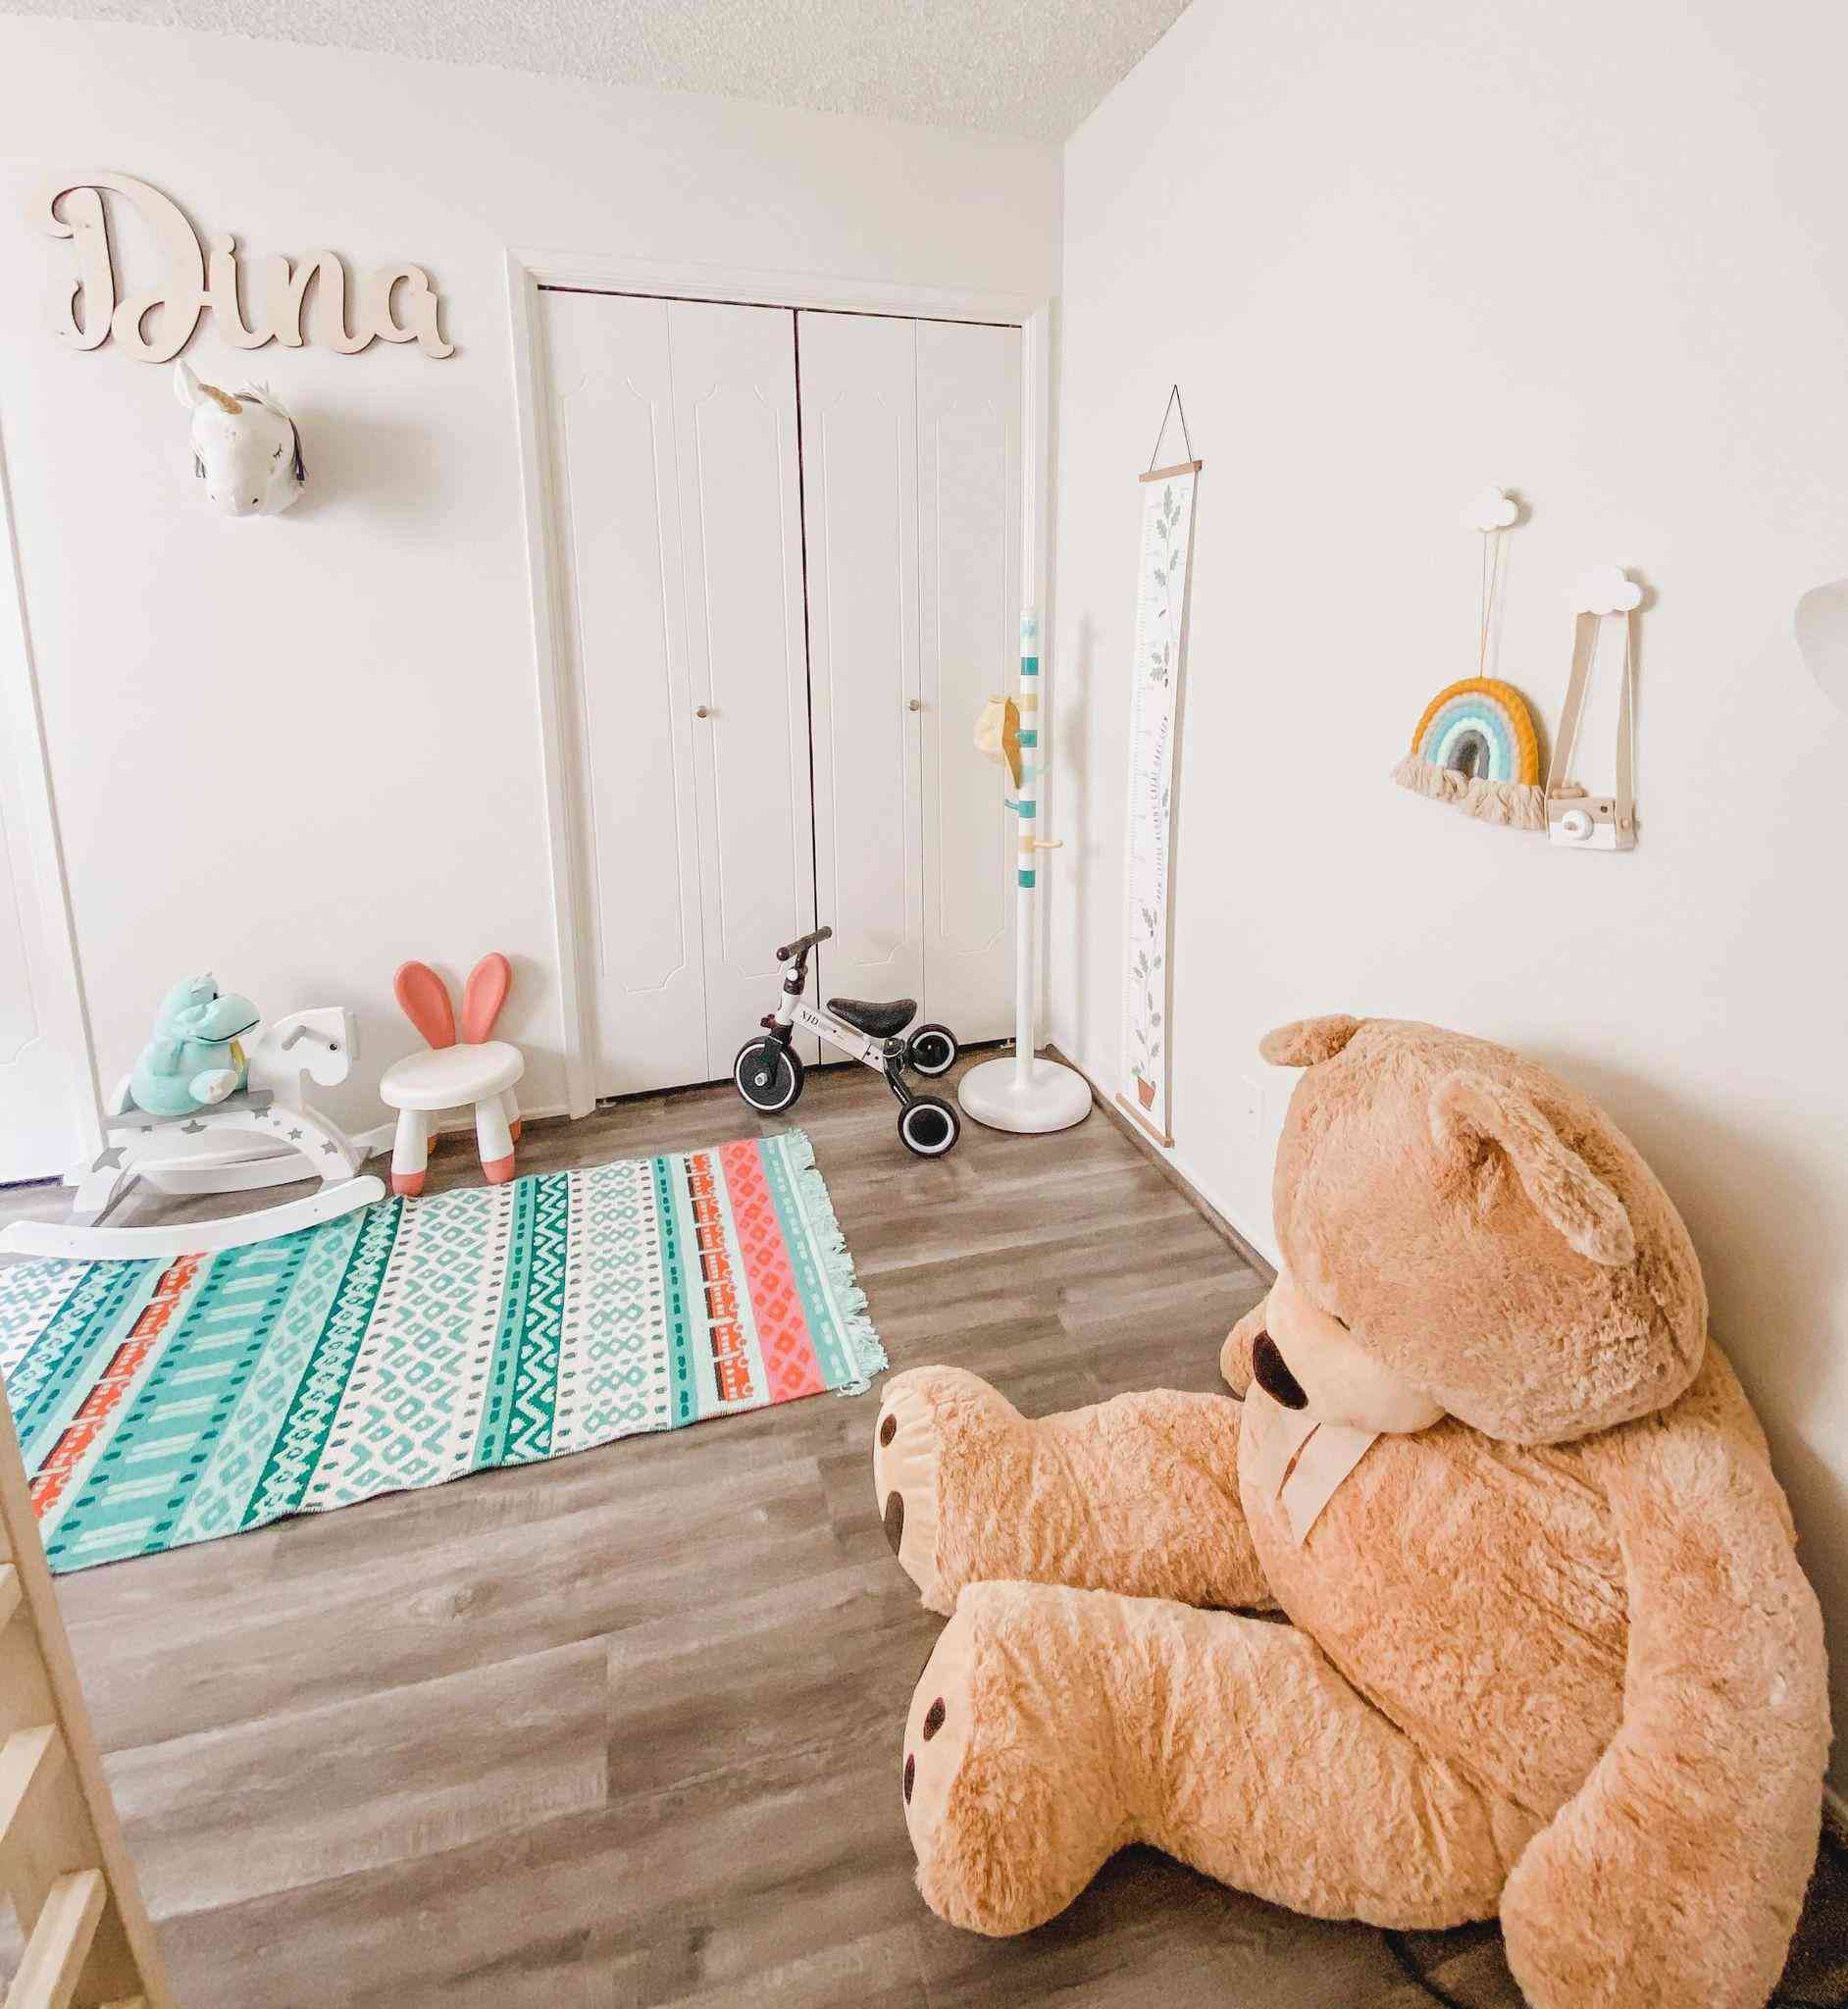 Mẹ trẻ 26 tuổi tự tay thiết kế phòng ngủ cho con gái khiến nhiều người mê mẩn - 7